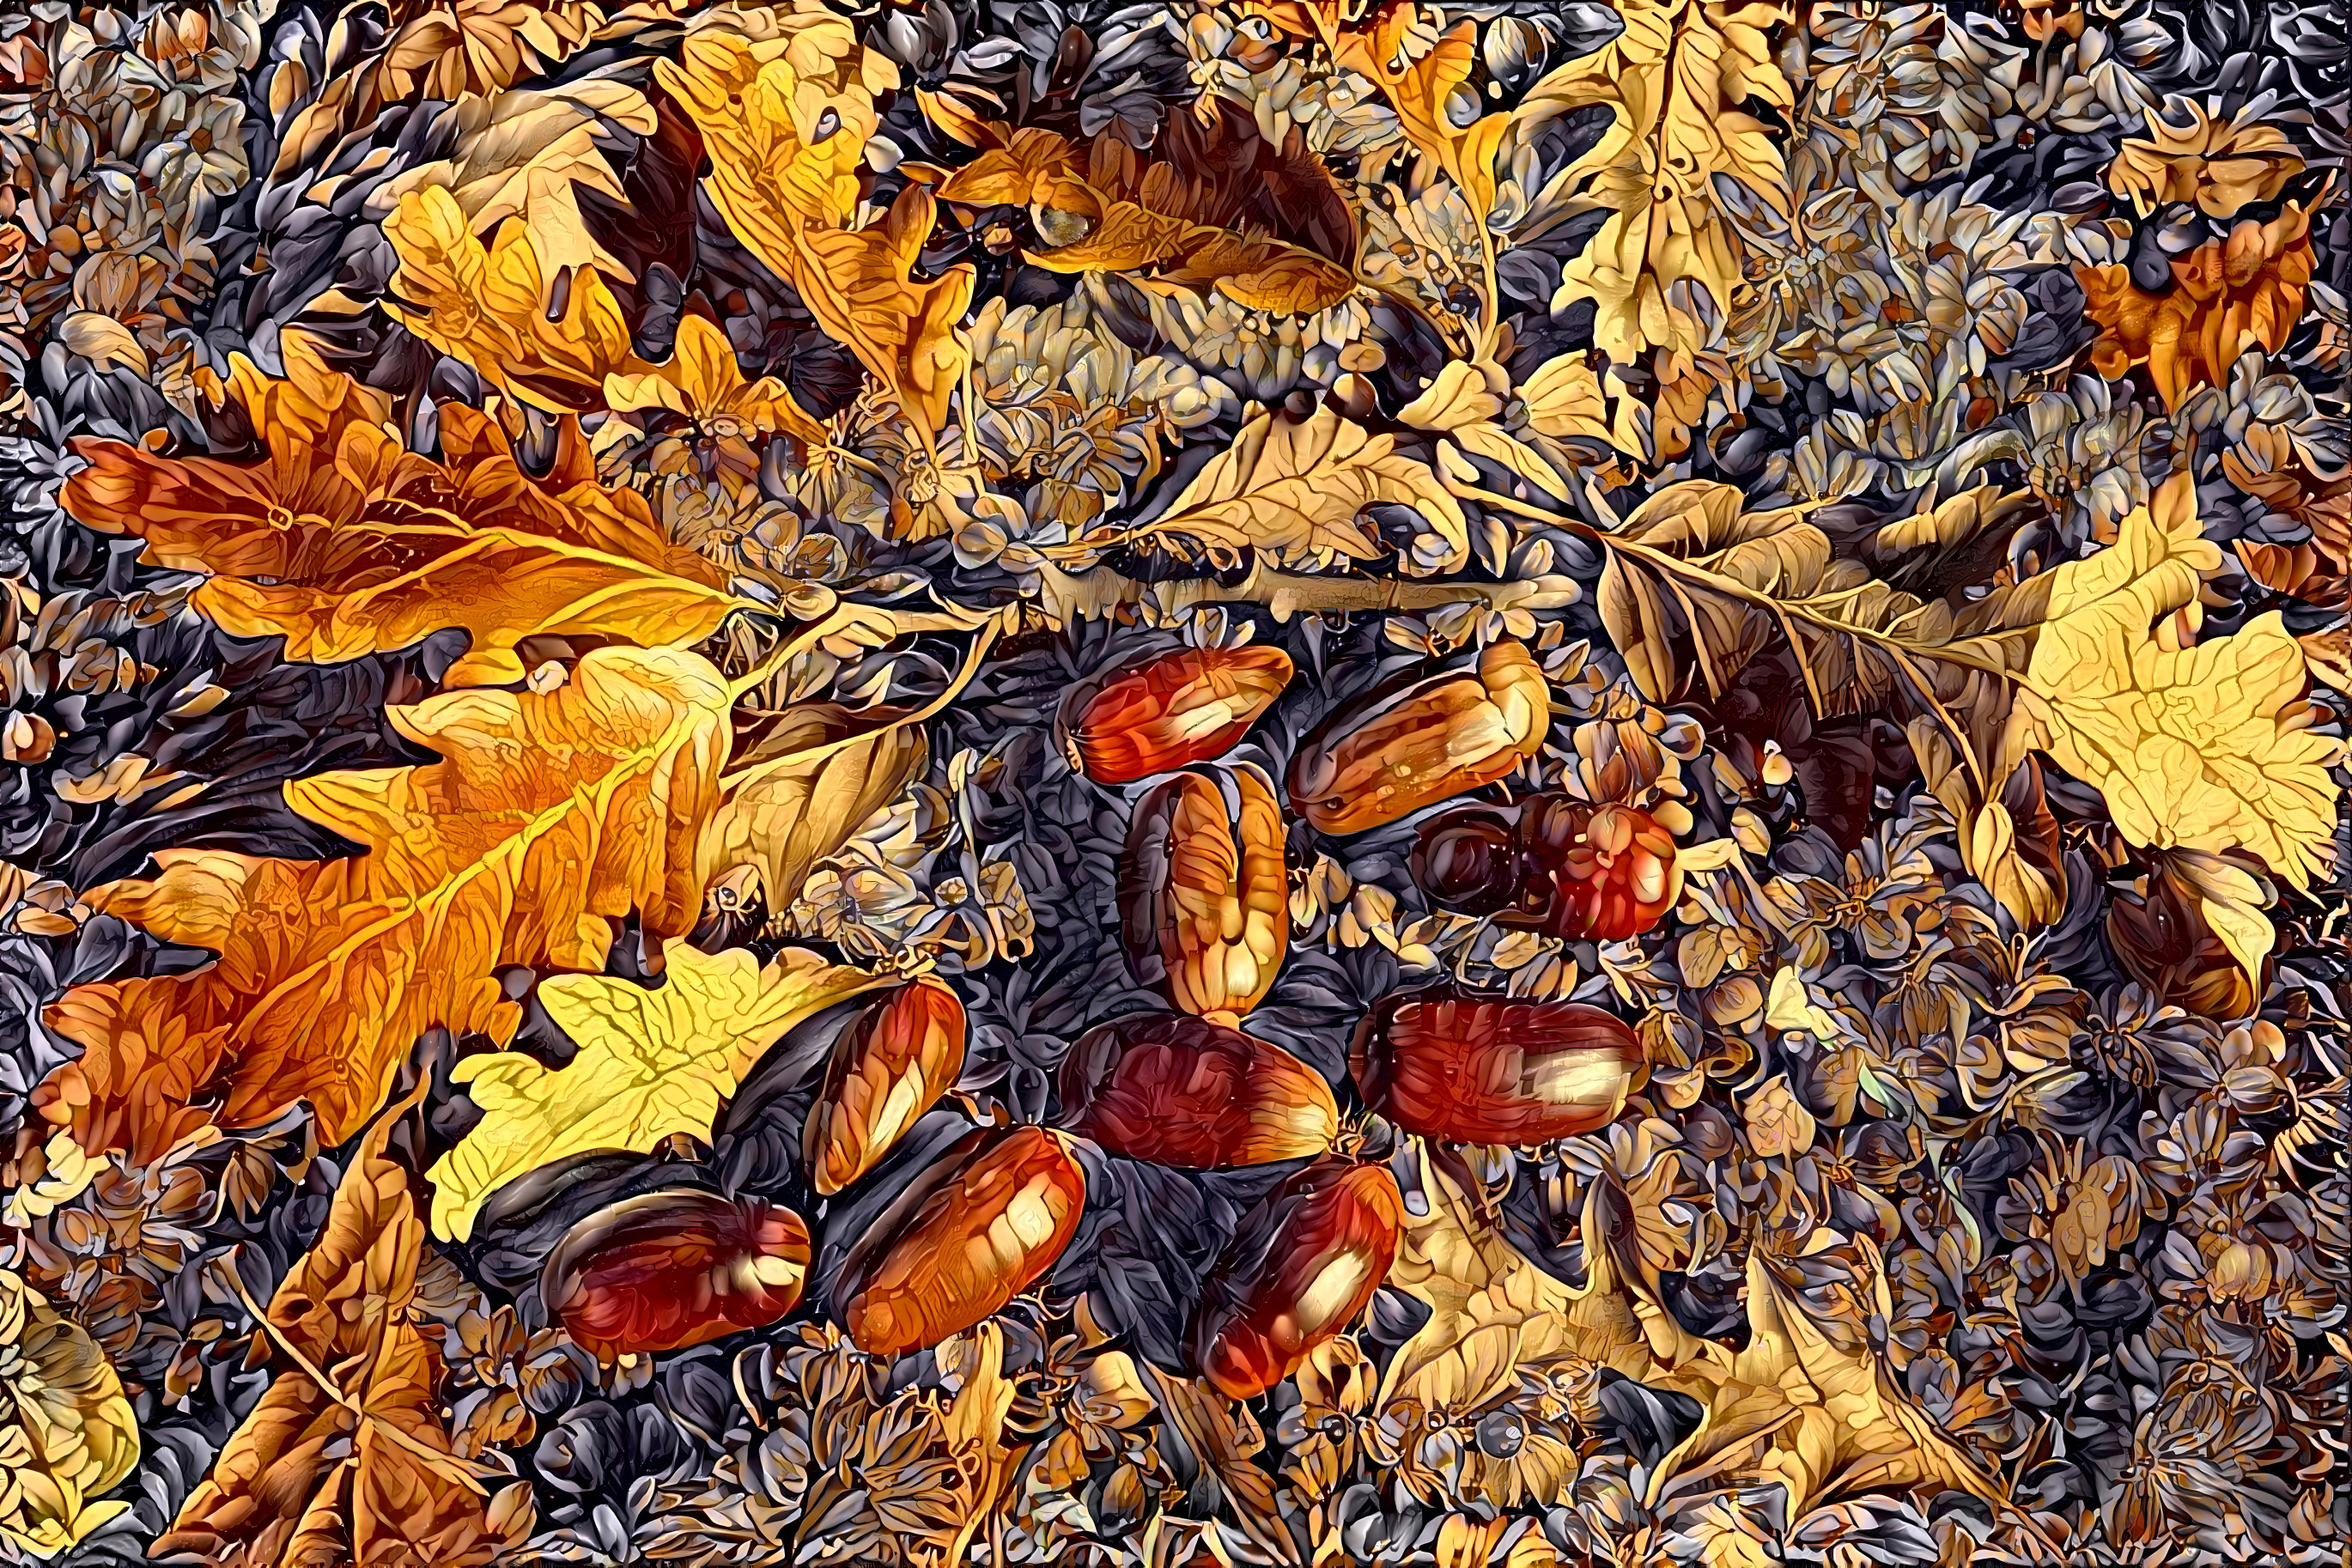 Oak leaves and Acorns